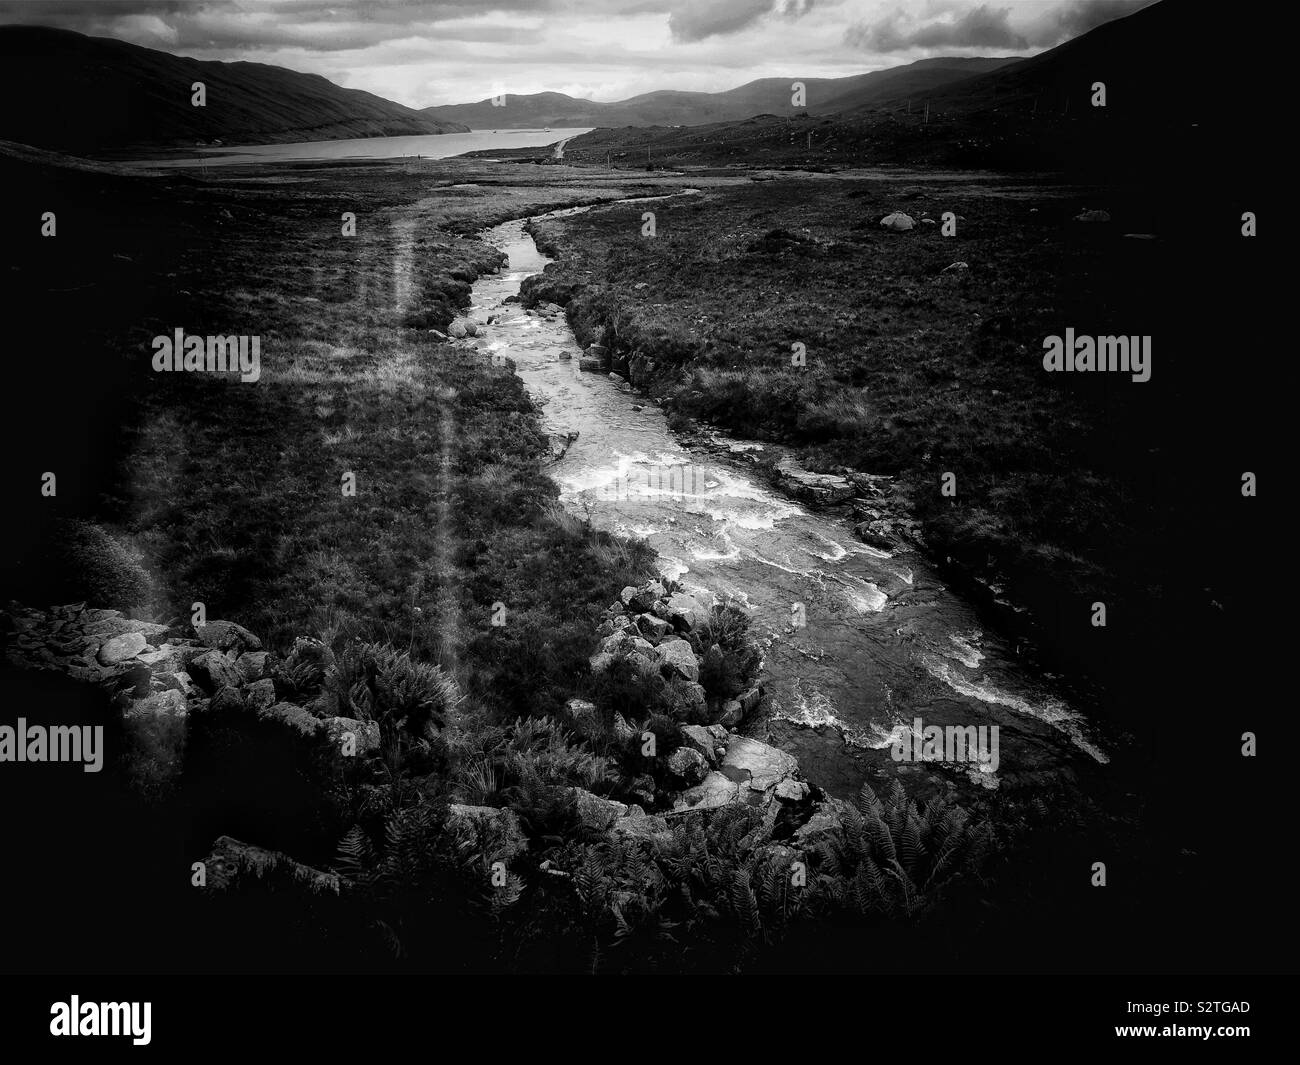 Image en noir et blanc de la rivière jaillissant sur les rochers dans un paysage sauvage, l'île de Skye, Écosse, Hébrides intérieures Banque D'Images